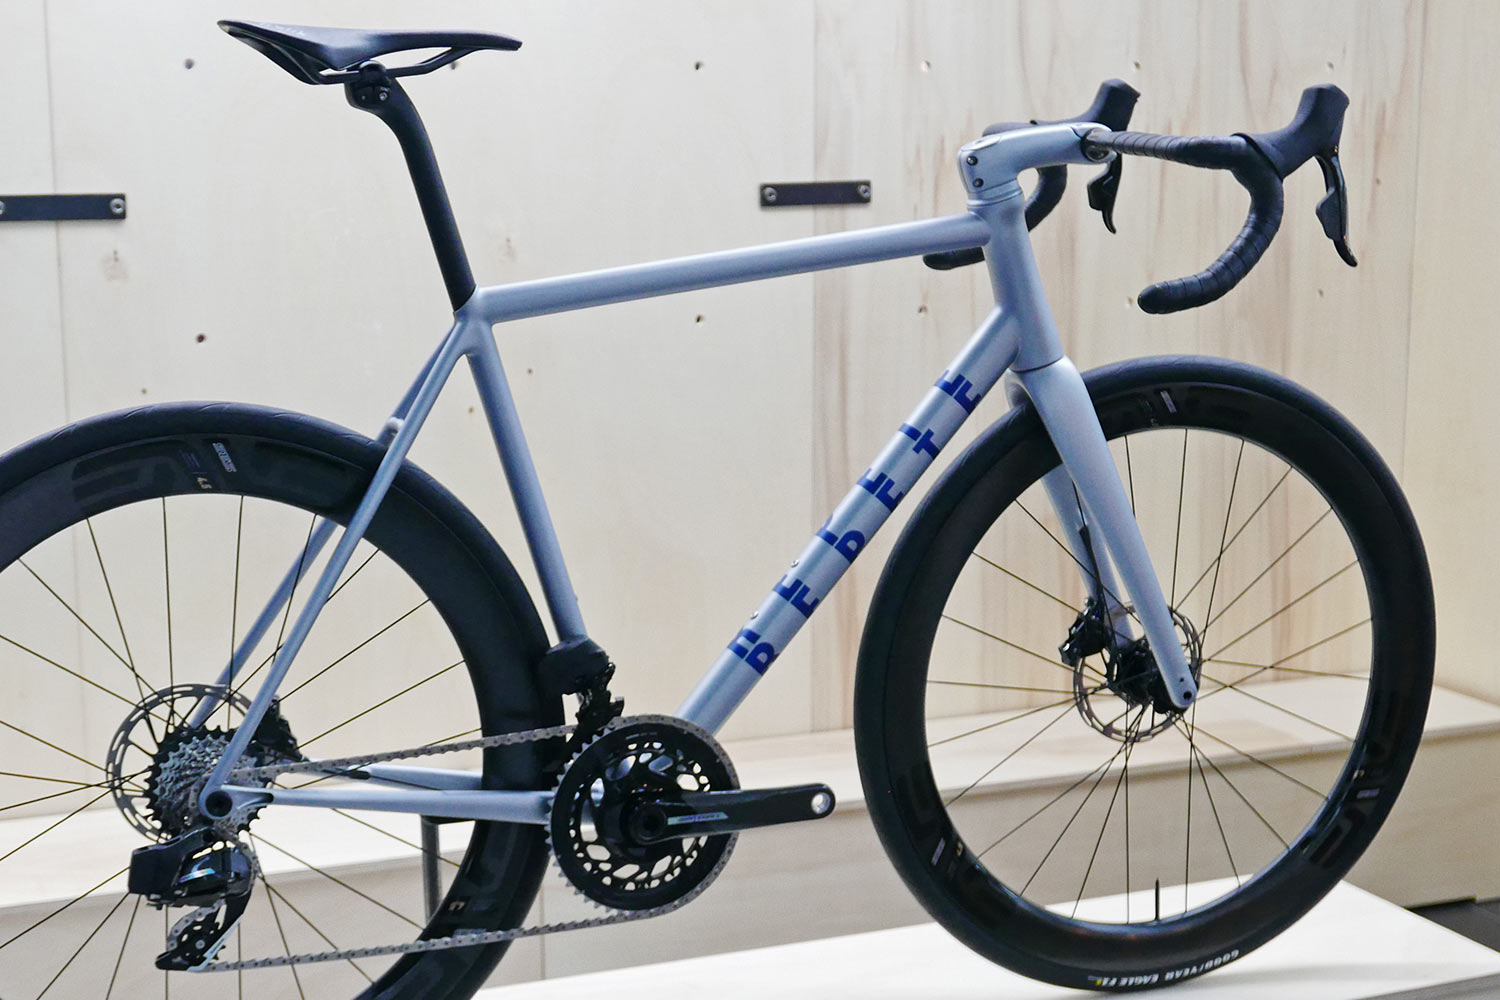 Repete R3 Reason fully integrated handmade modern steel road bike, angled frameset